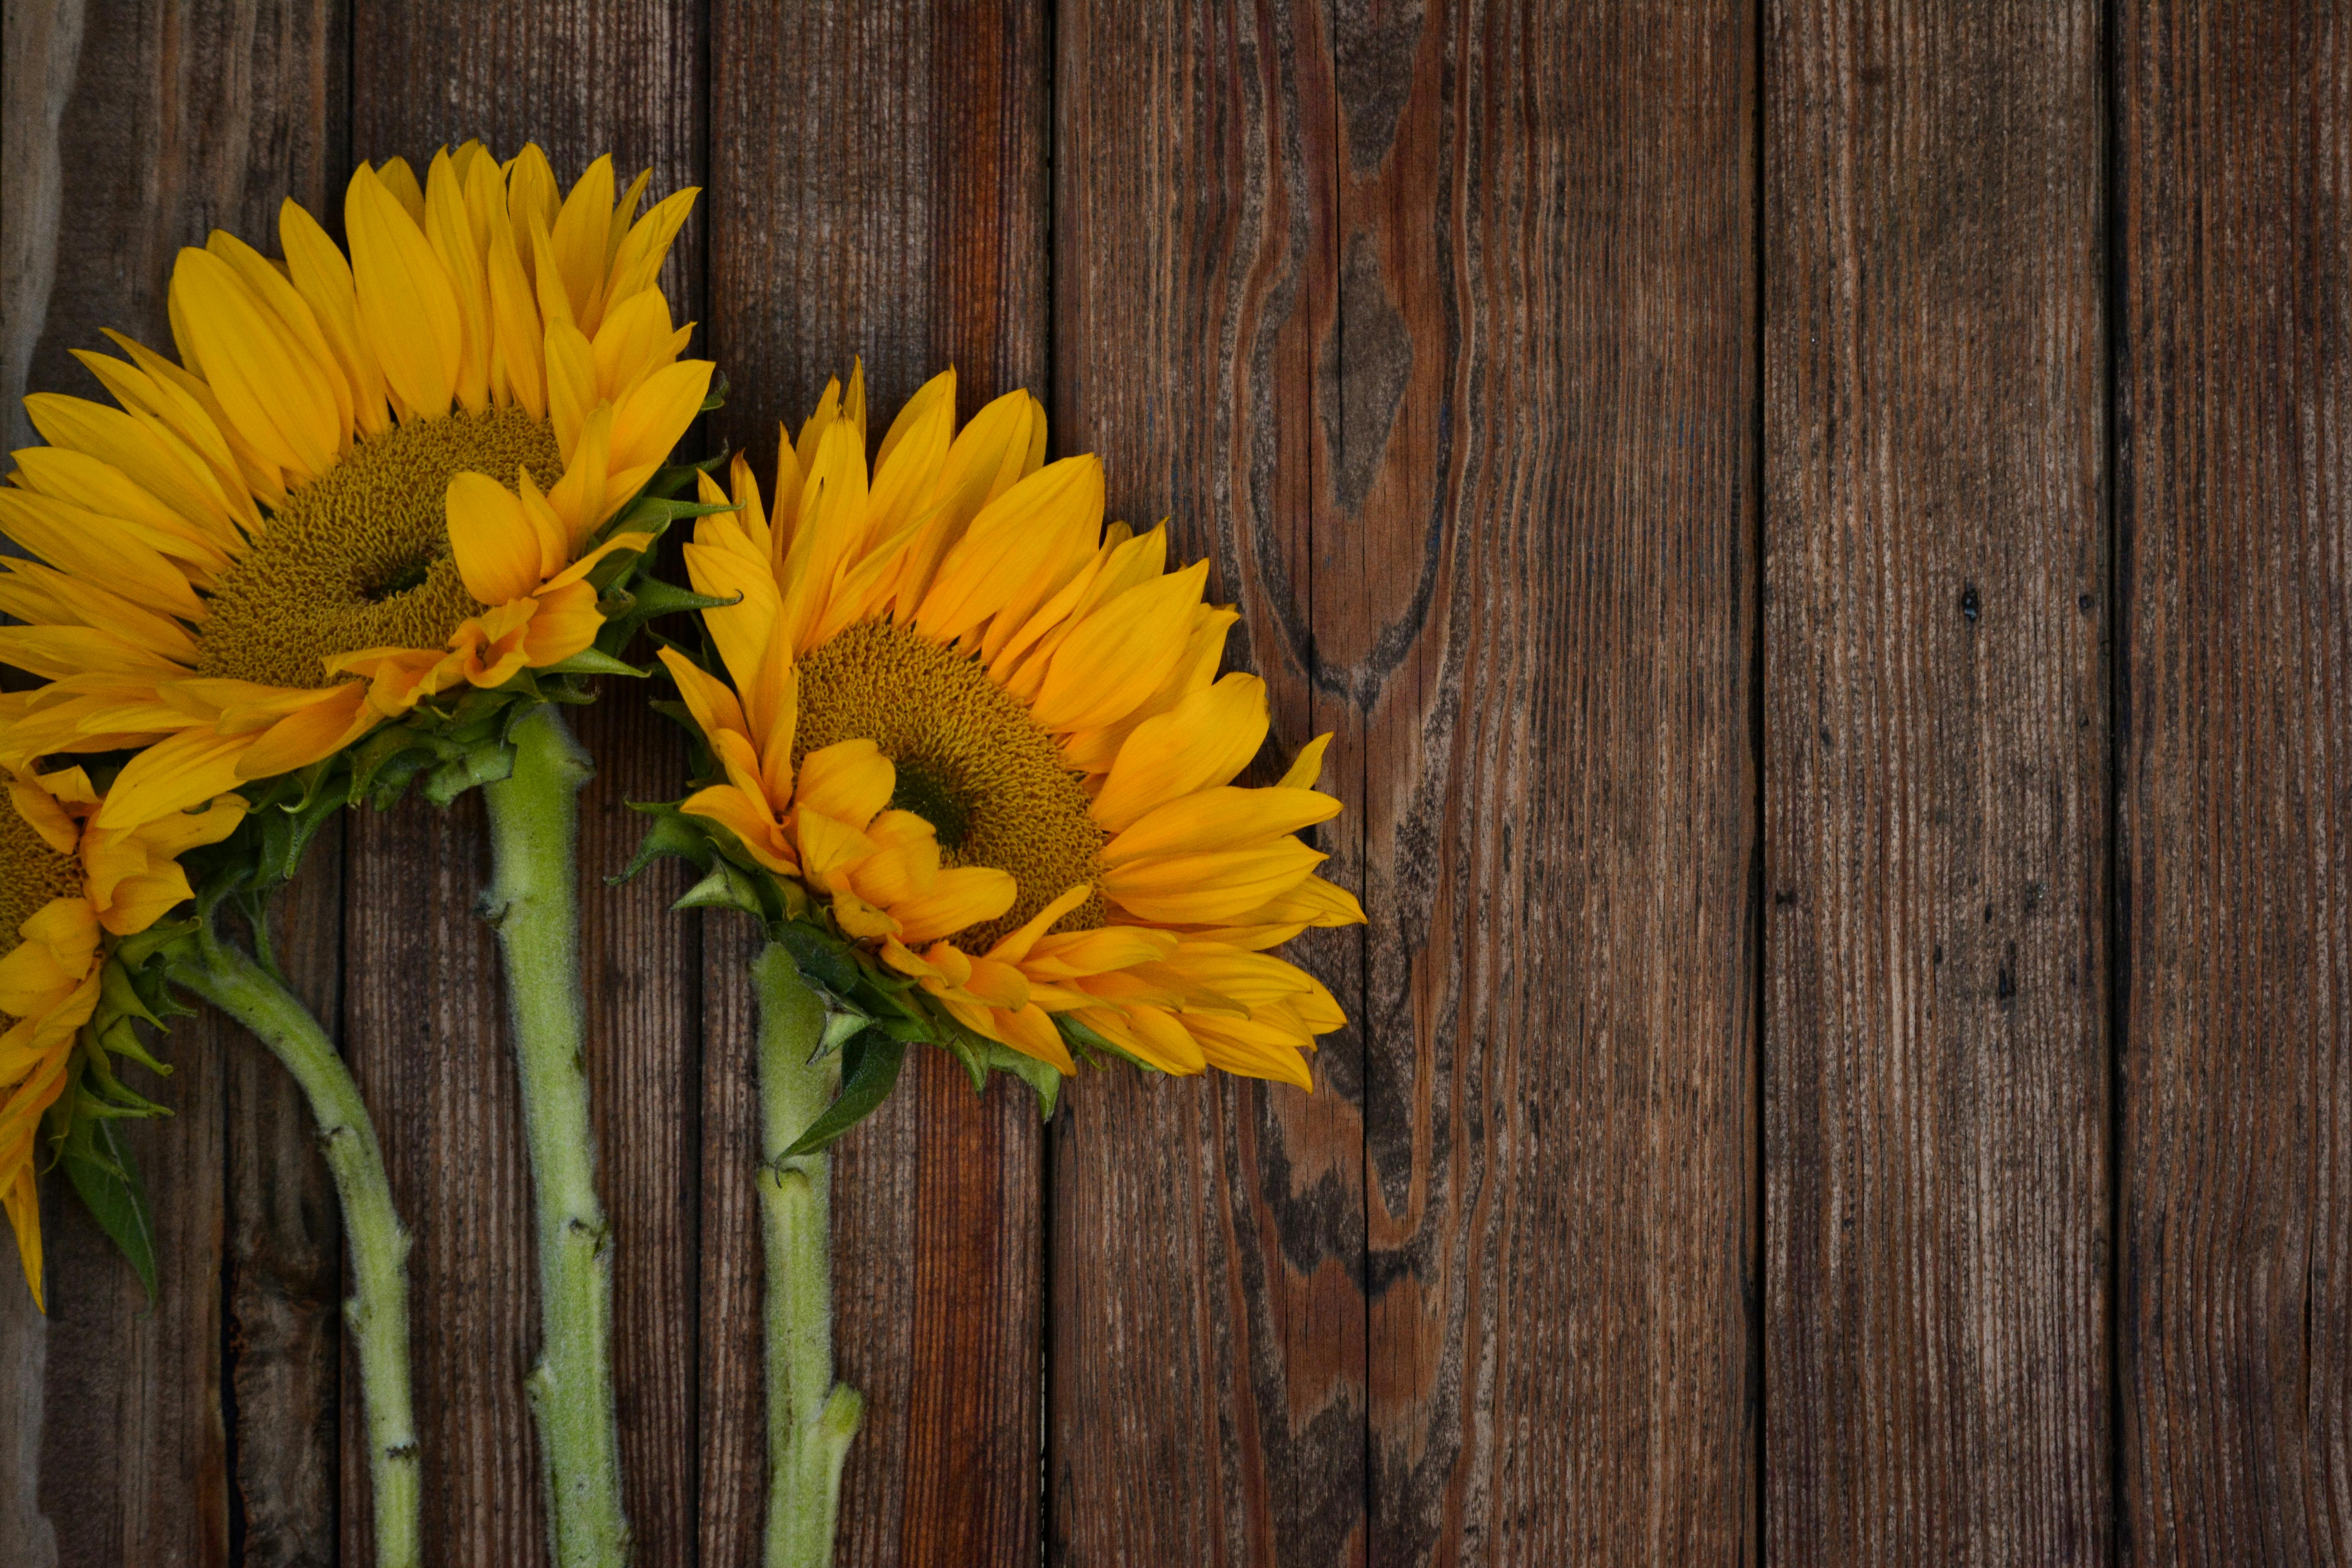 Hoa Hướng Dương: Hãy cùng thưởng thức hình ảnh ngày mới bắt đầu với những đóa hoa hướng dương xinh đẹp. Với vẻ đẹp rực rỡ và ý nghĩa đầy tình yêu thương, hoa hướng dương chắc chắn sẽ làm bạn cảm thấy tự tin và tràn đầy năng lượng cho một ngày mới tốt lành.